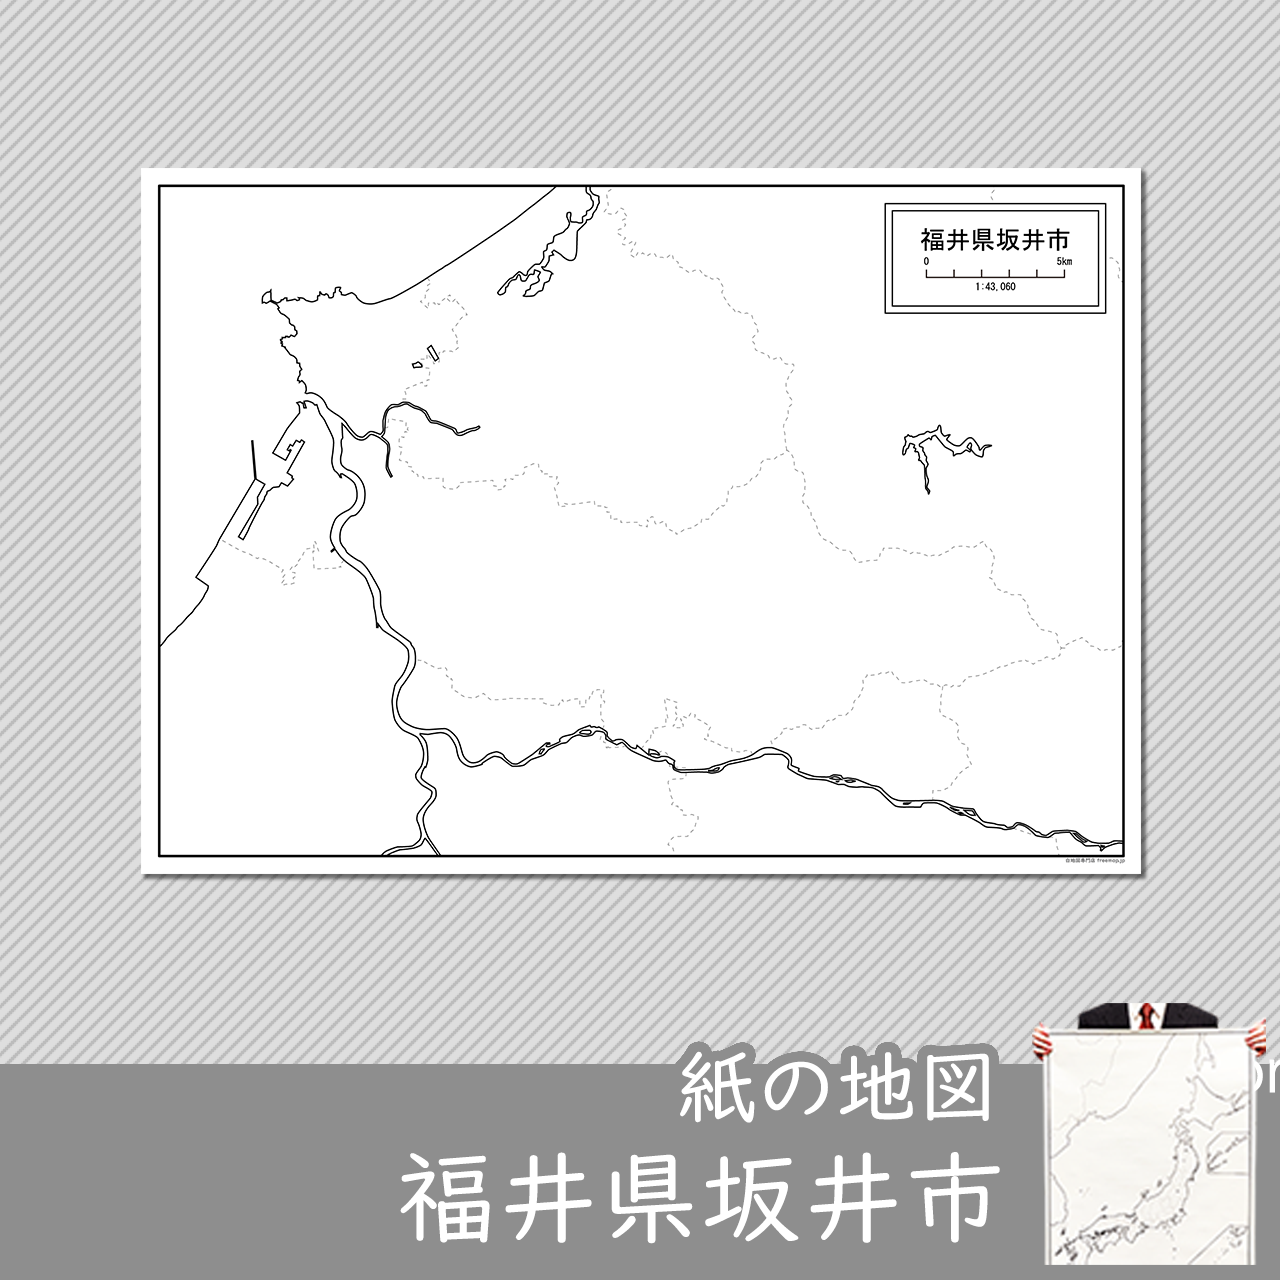 坂井市の紙の白地図のサムネイル